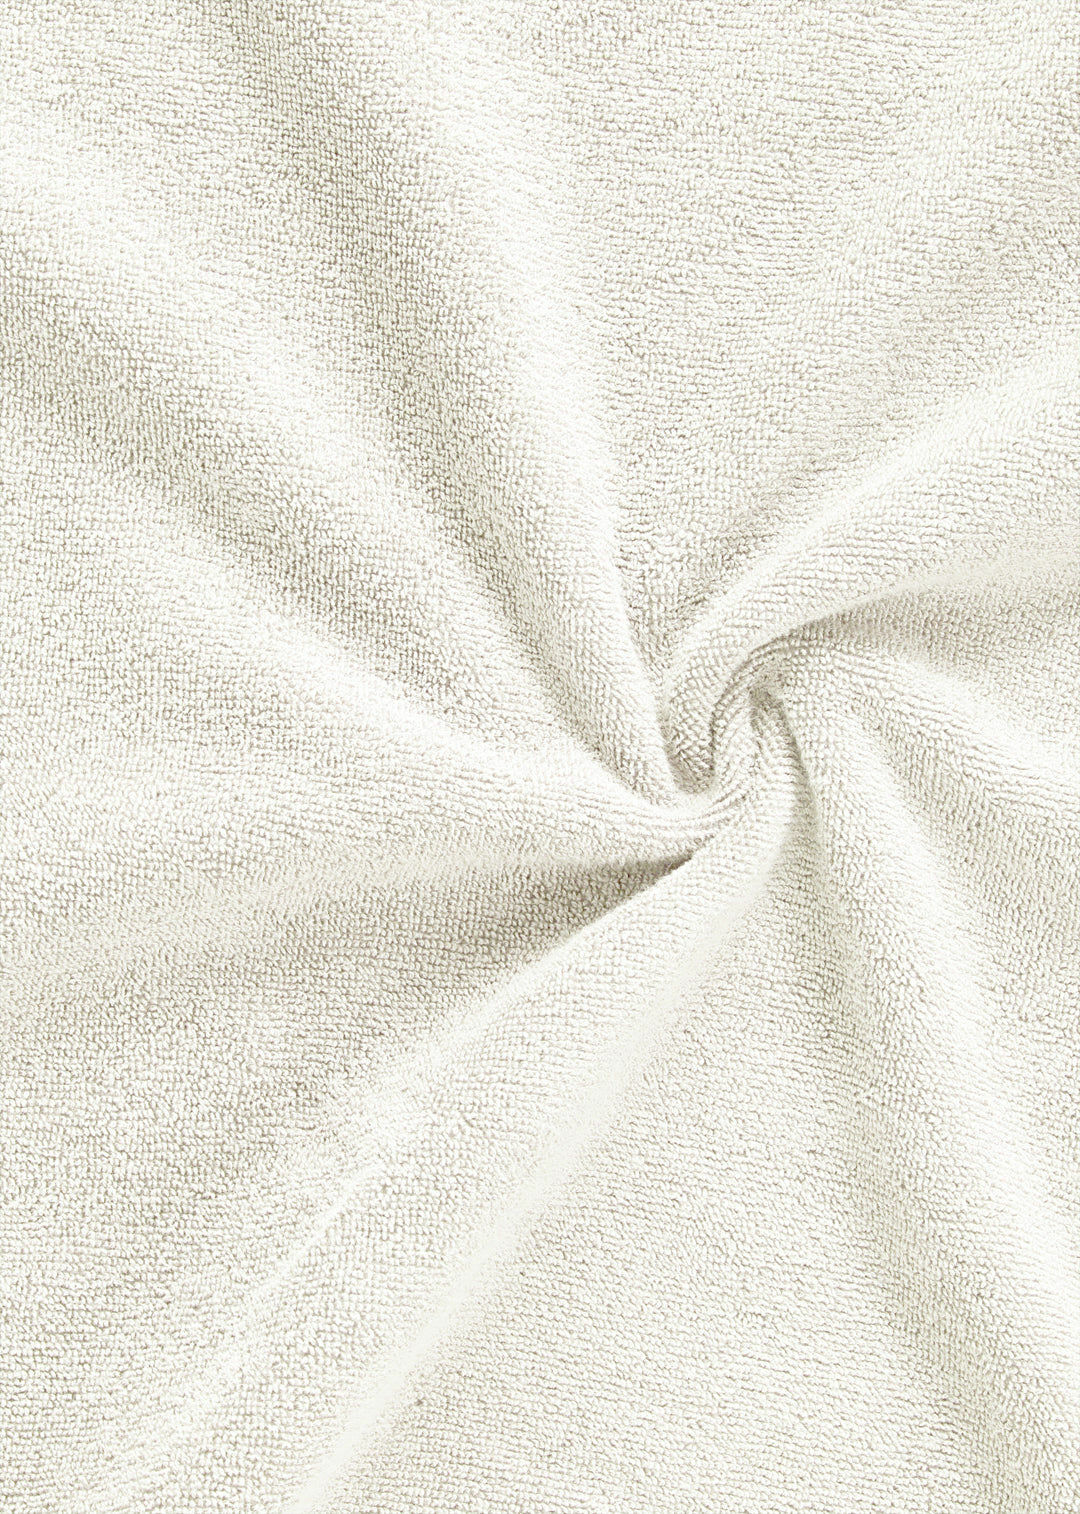 Handtuch Baumwolle Weiß 30 x 50 cm 1